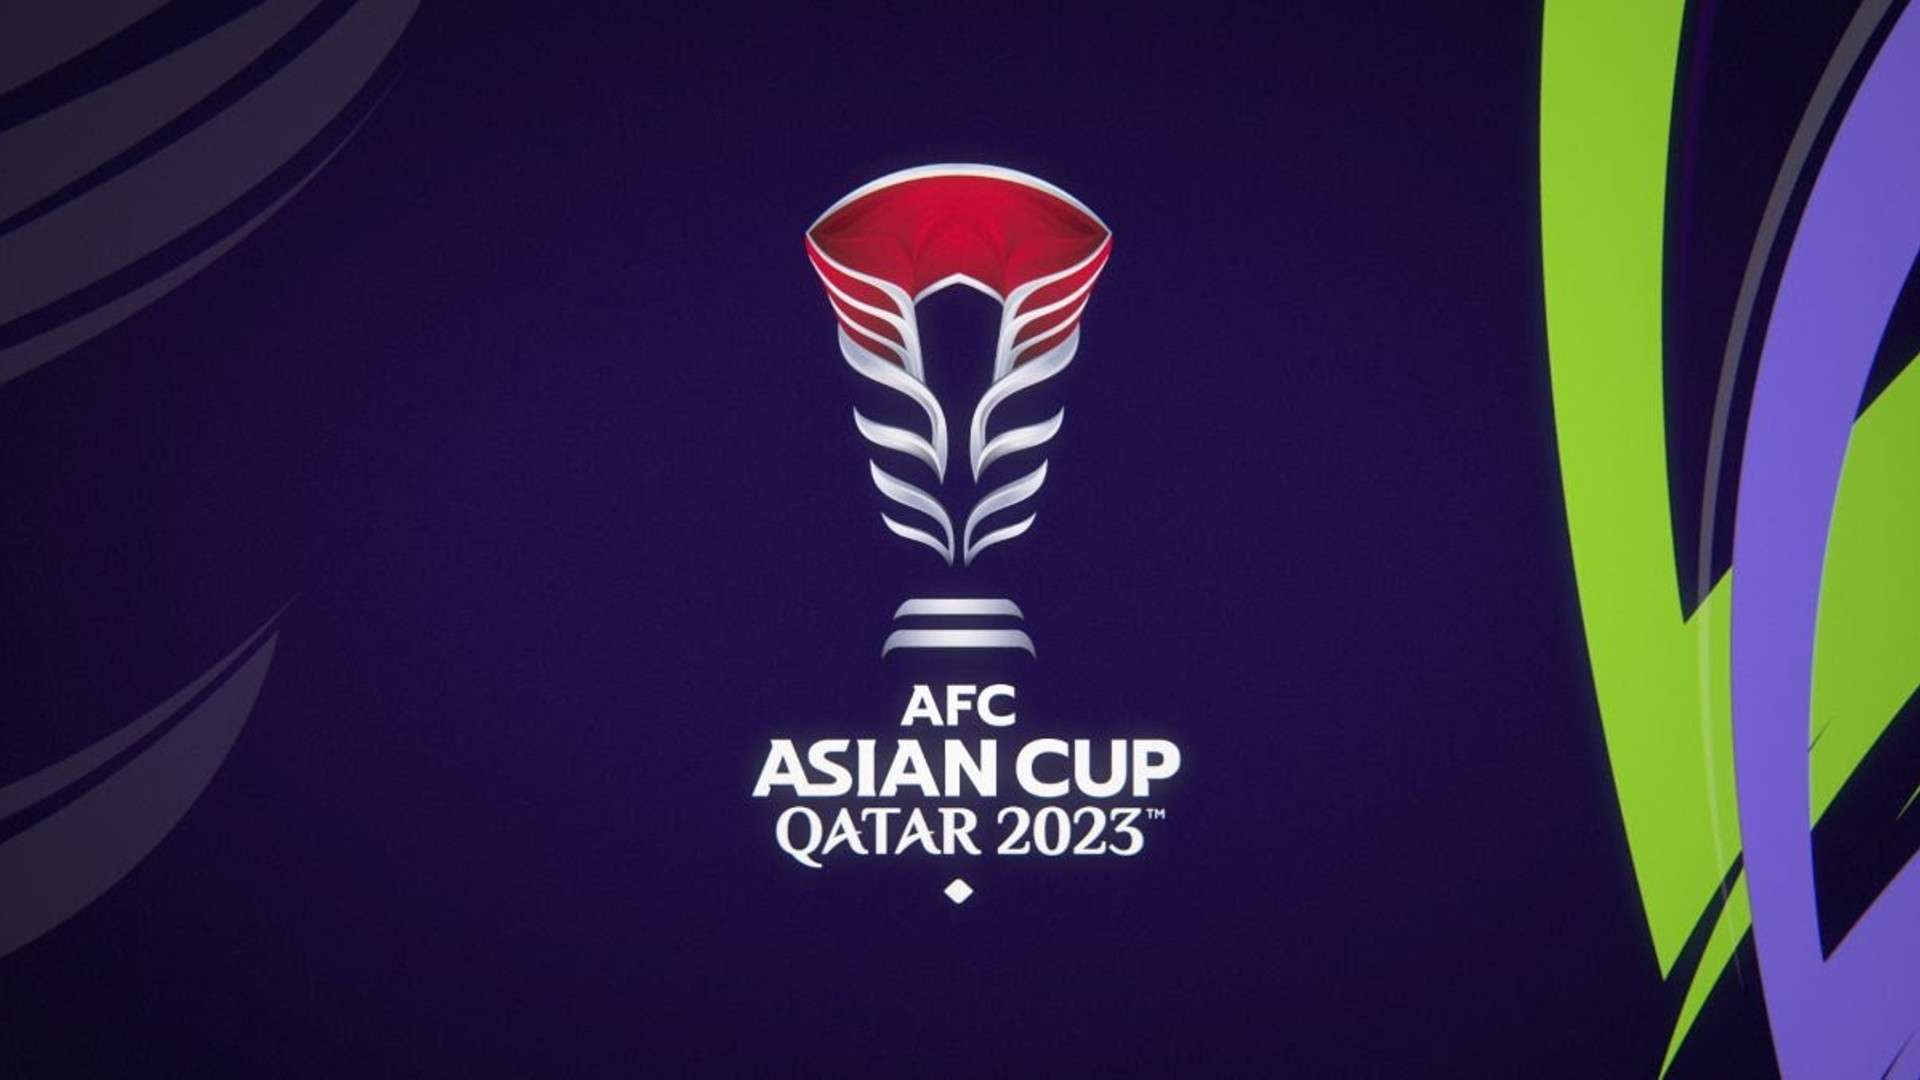 Asian Cup 2023 logo